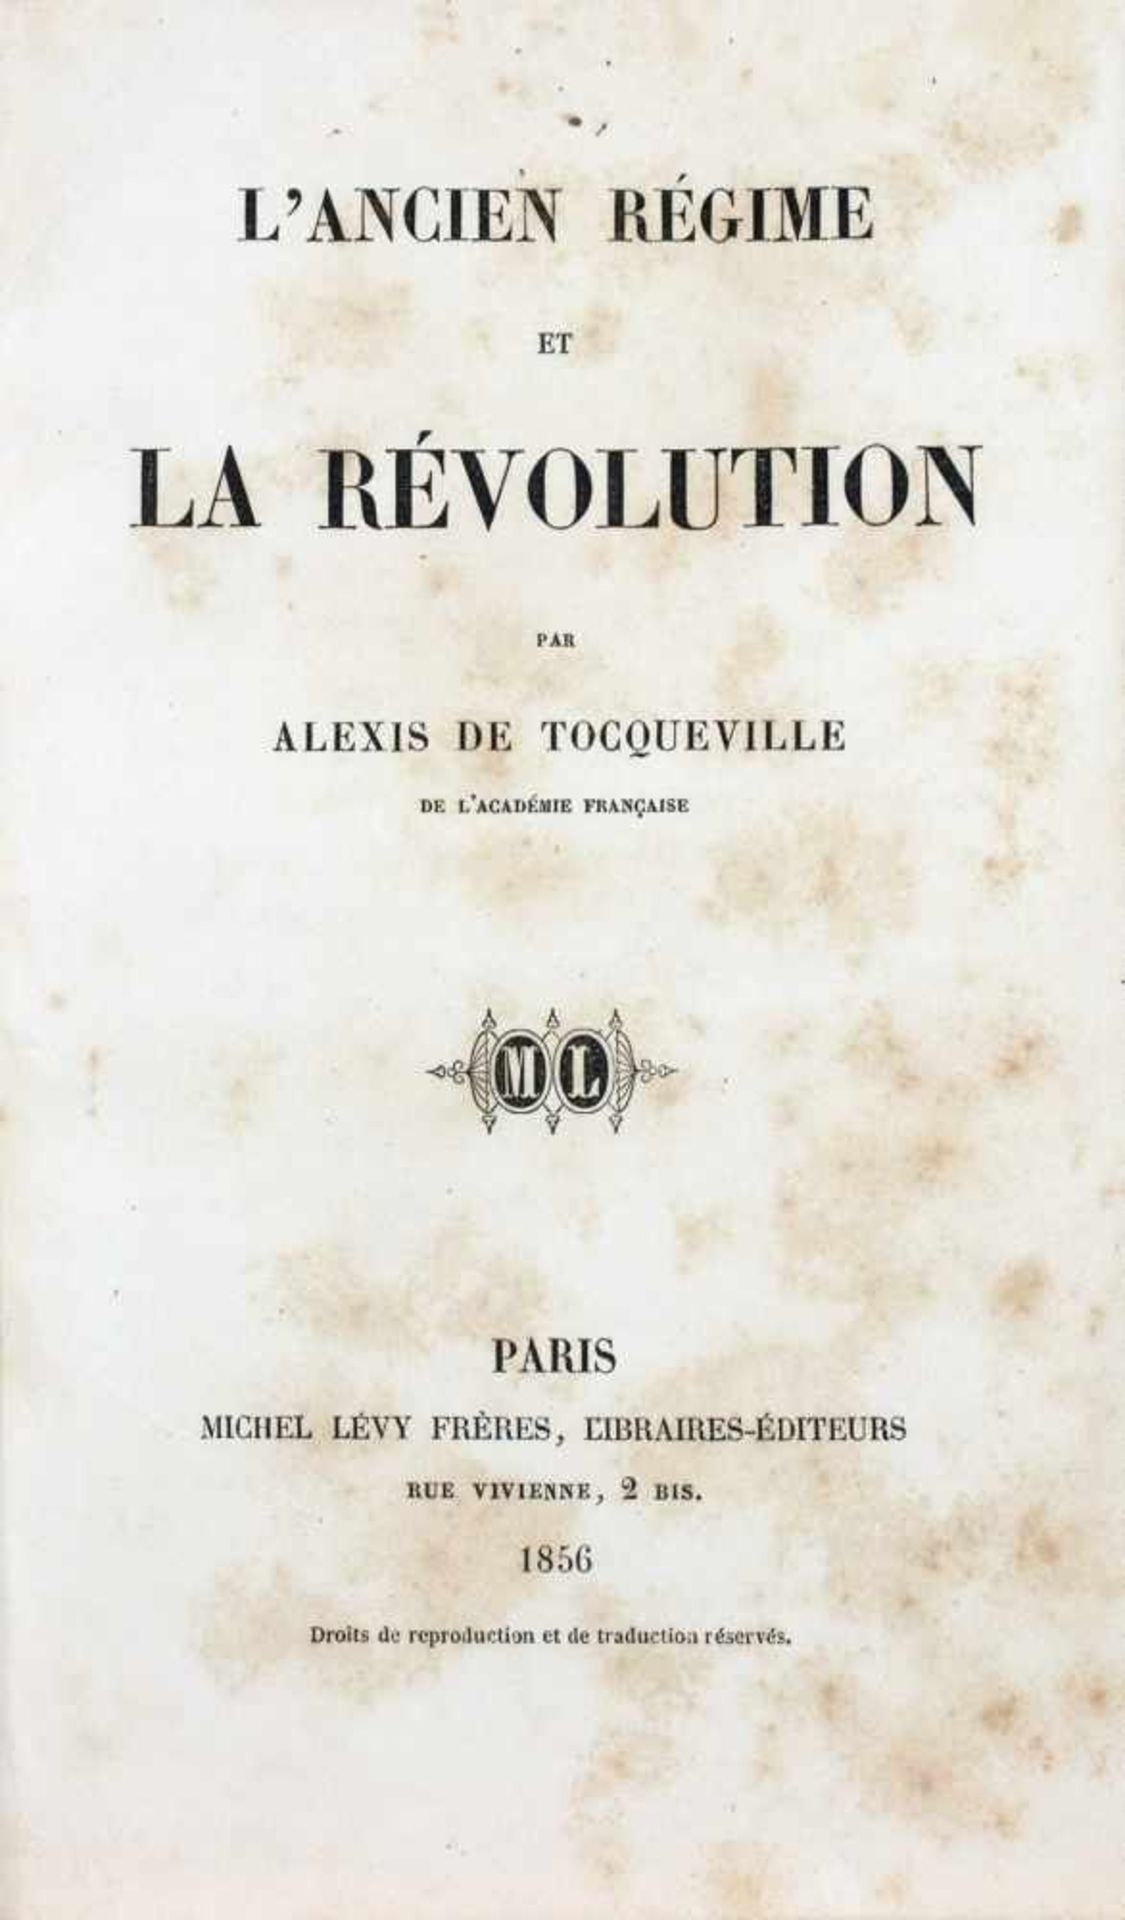 Alexis de Tocqueville. Lancien régime et la révolution. Paris, Michel Lévy Frères 1856. Roter